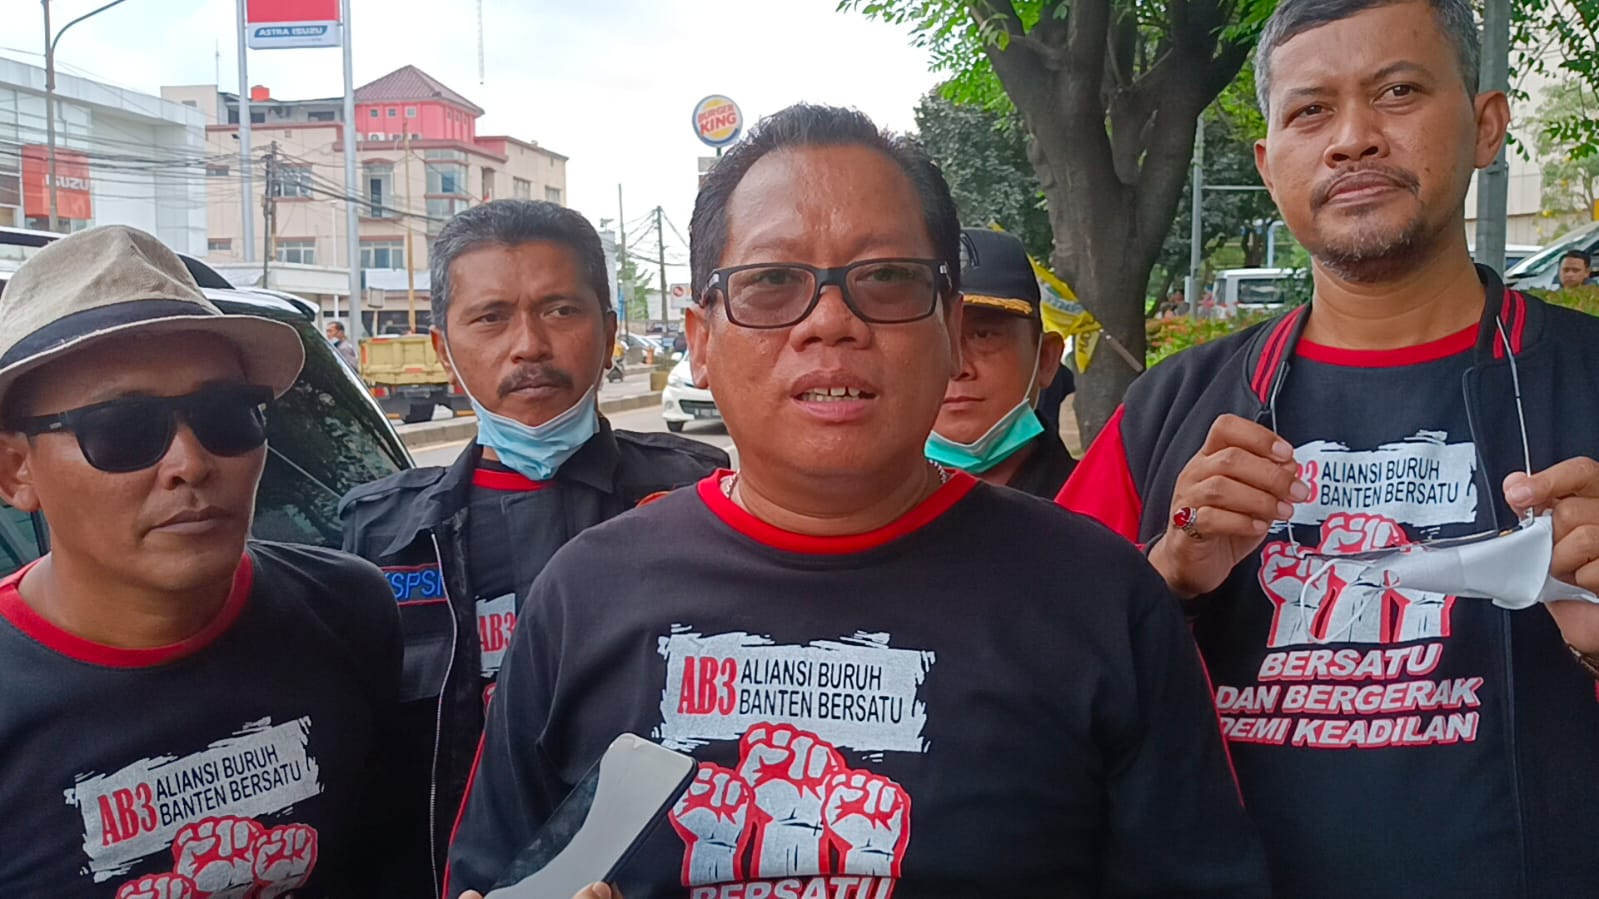 Buruh dari Tangerang bergerak ke kantor Gubernur Banten di Serang, Banten, untuk menuntut kenaikan upah tahun 2022.